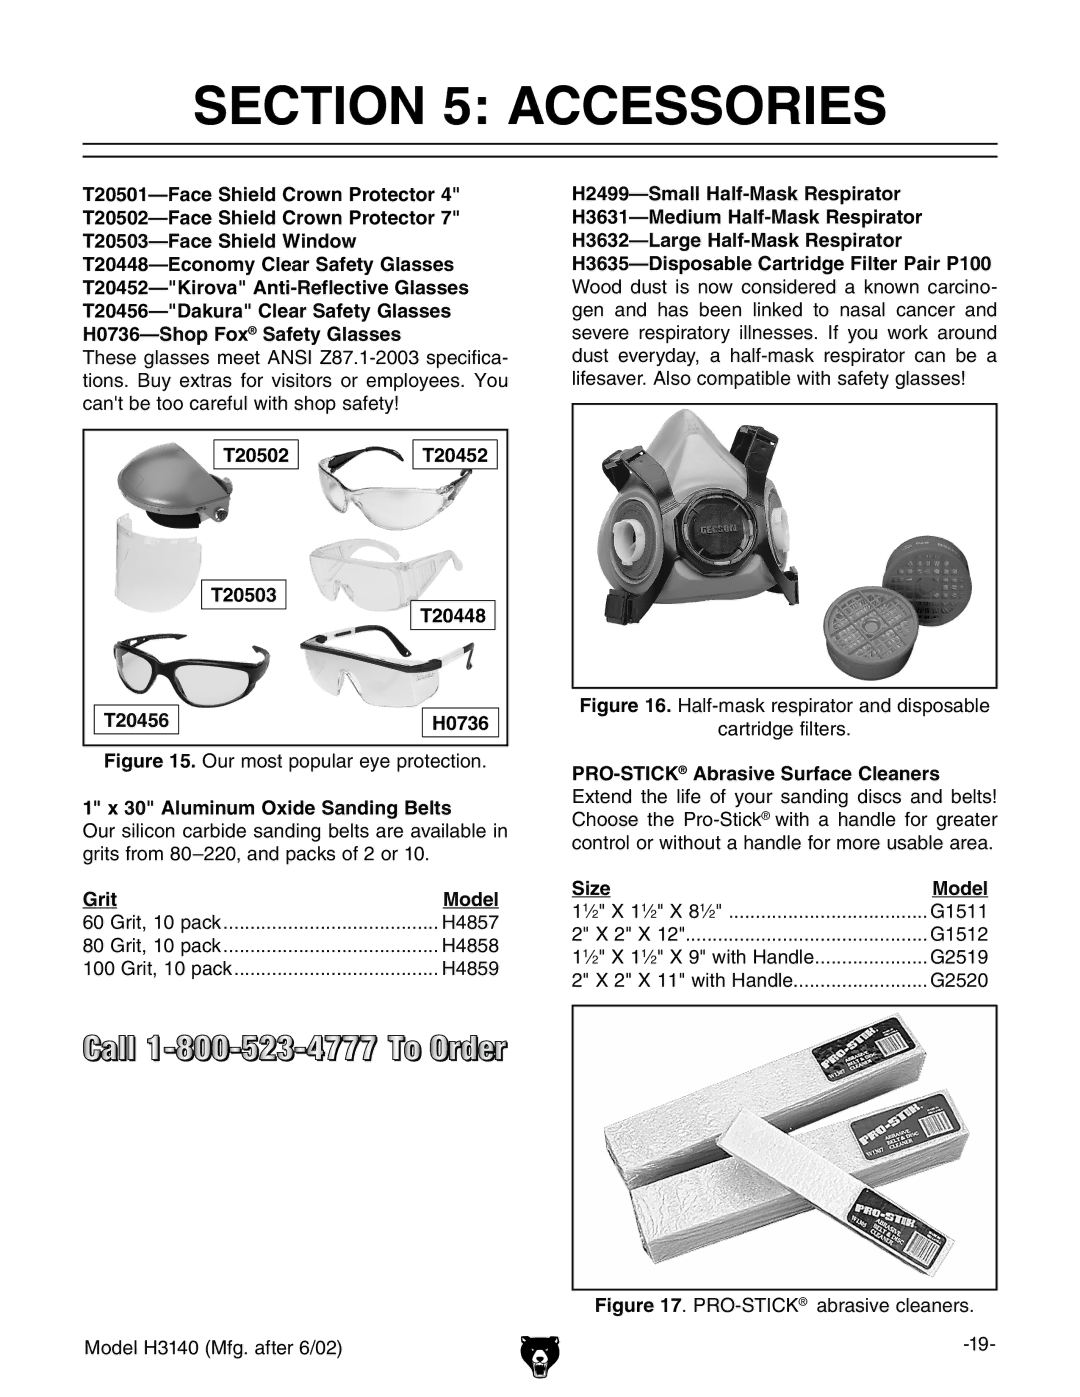 Grizzly H3140 Accessories, T20502 T20452 T20503 T20448 T20456 H0736, Aluminum Oxide Sanding Belts, Grit Model, Size Model 